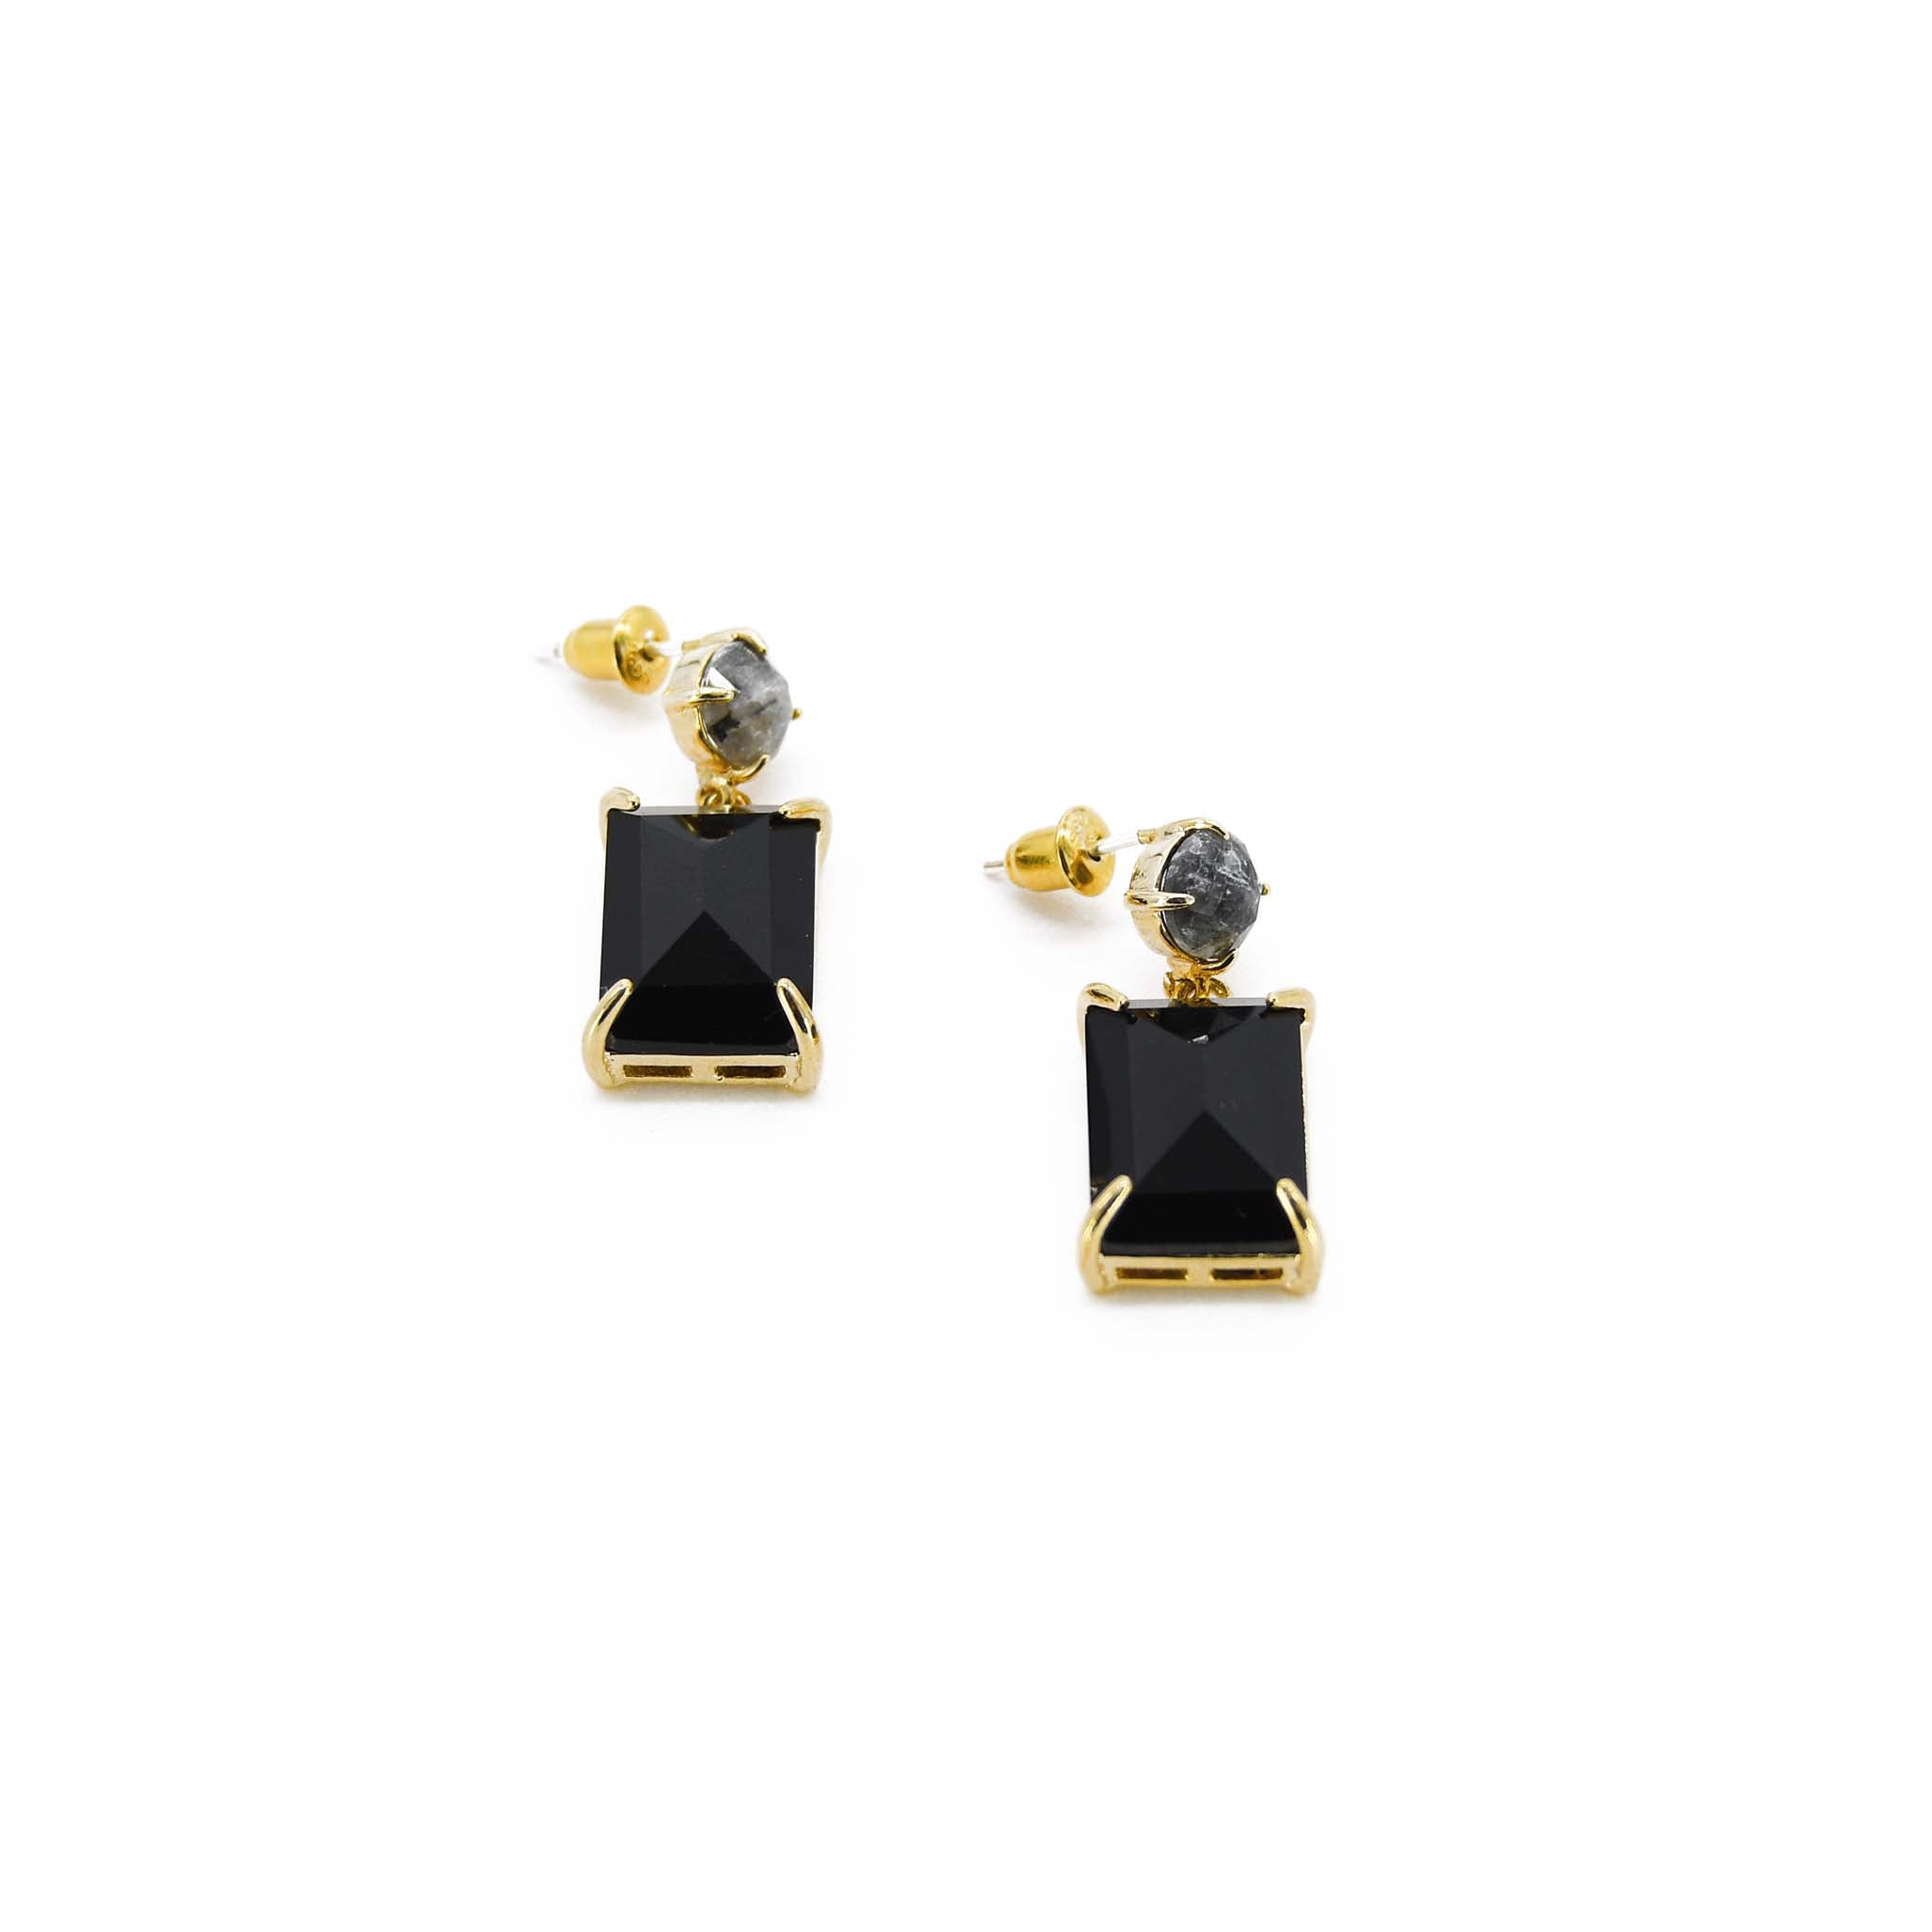 Louisette Jet Black Earrings S00 - Fashion Jewellery M00949